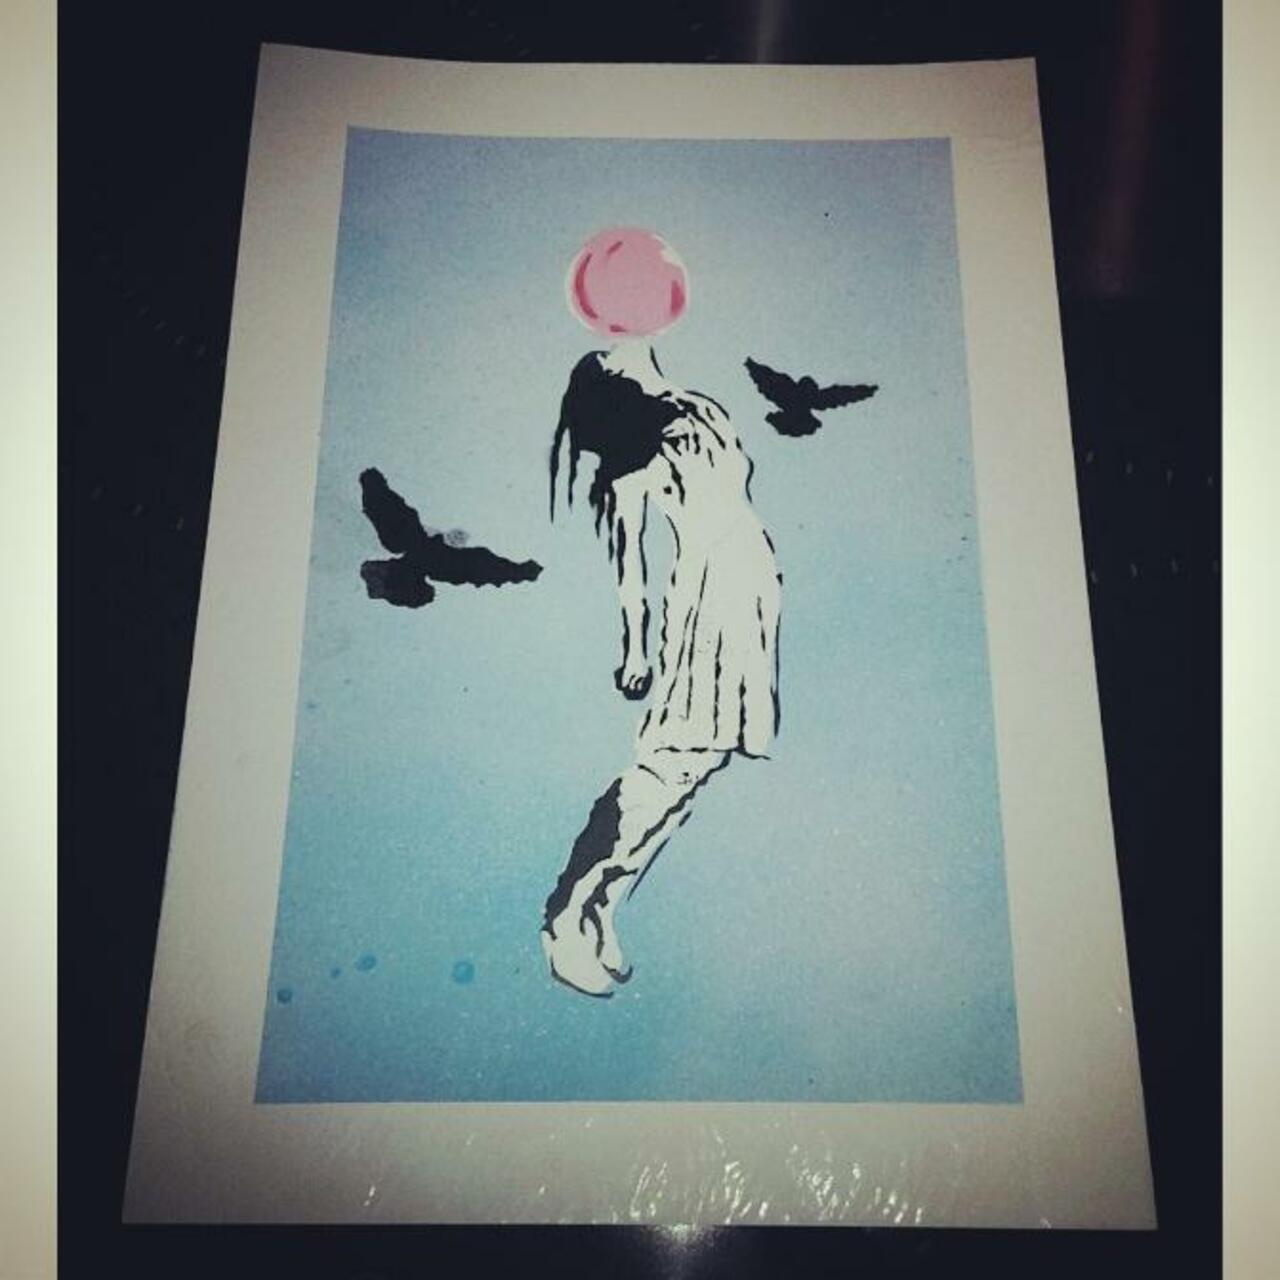 New piece: high hopes #art #high #girl #bubble #birds #float #graffiti #stencil #streetart #sky http://t.co/K55zafSyZt